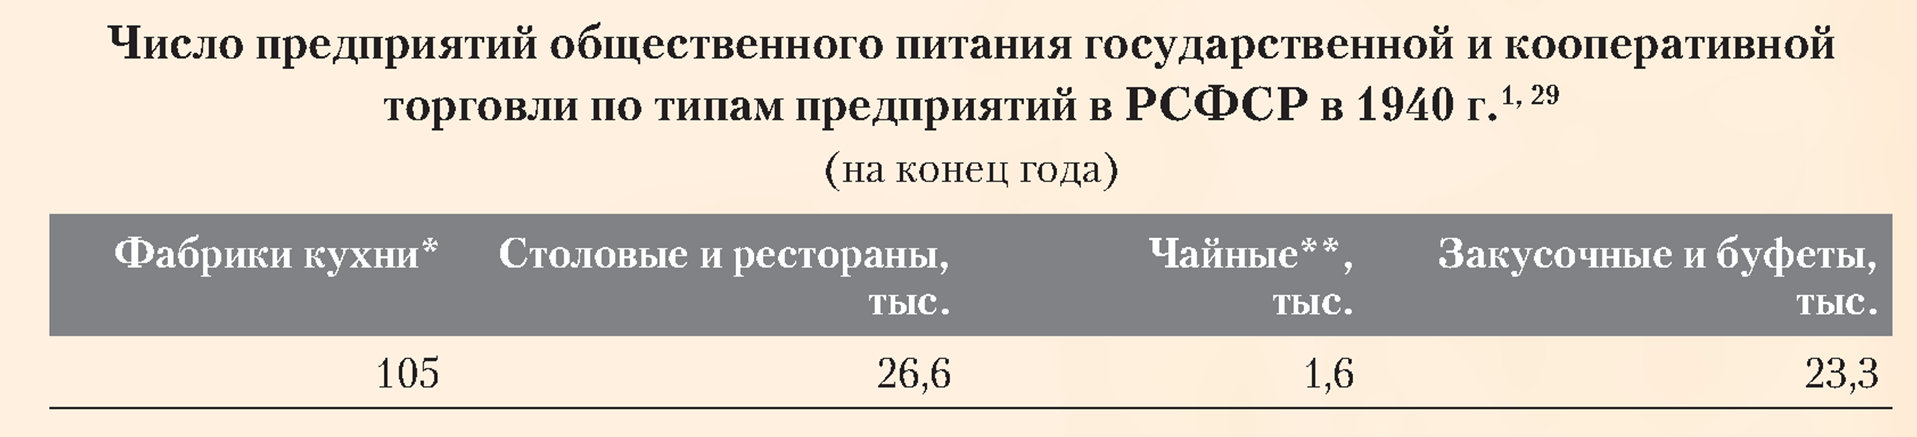 Число предприятий общественного питания государственной и кооперативной торговли по типам предприятий в РСФСР в 1940 году